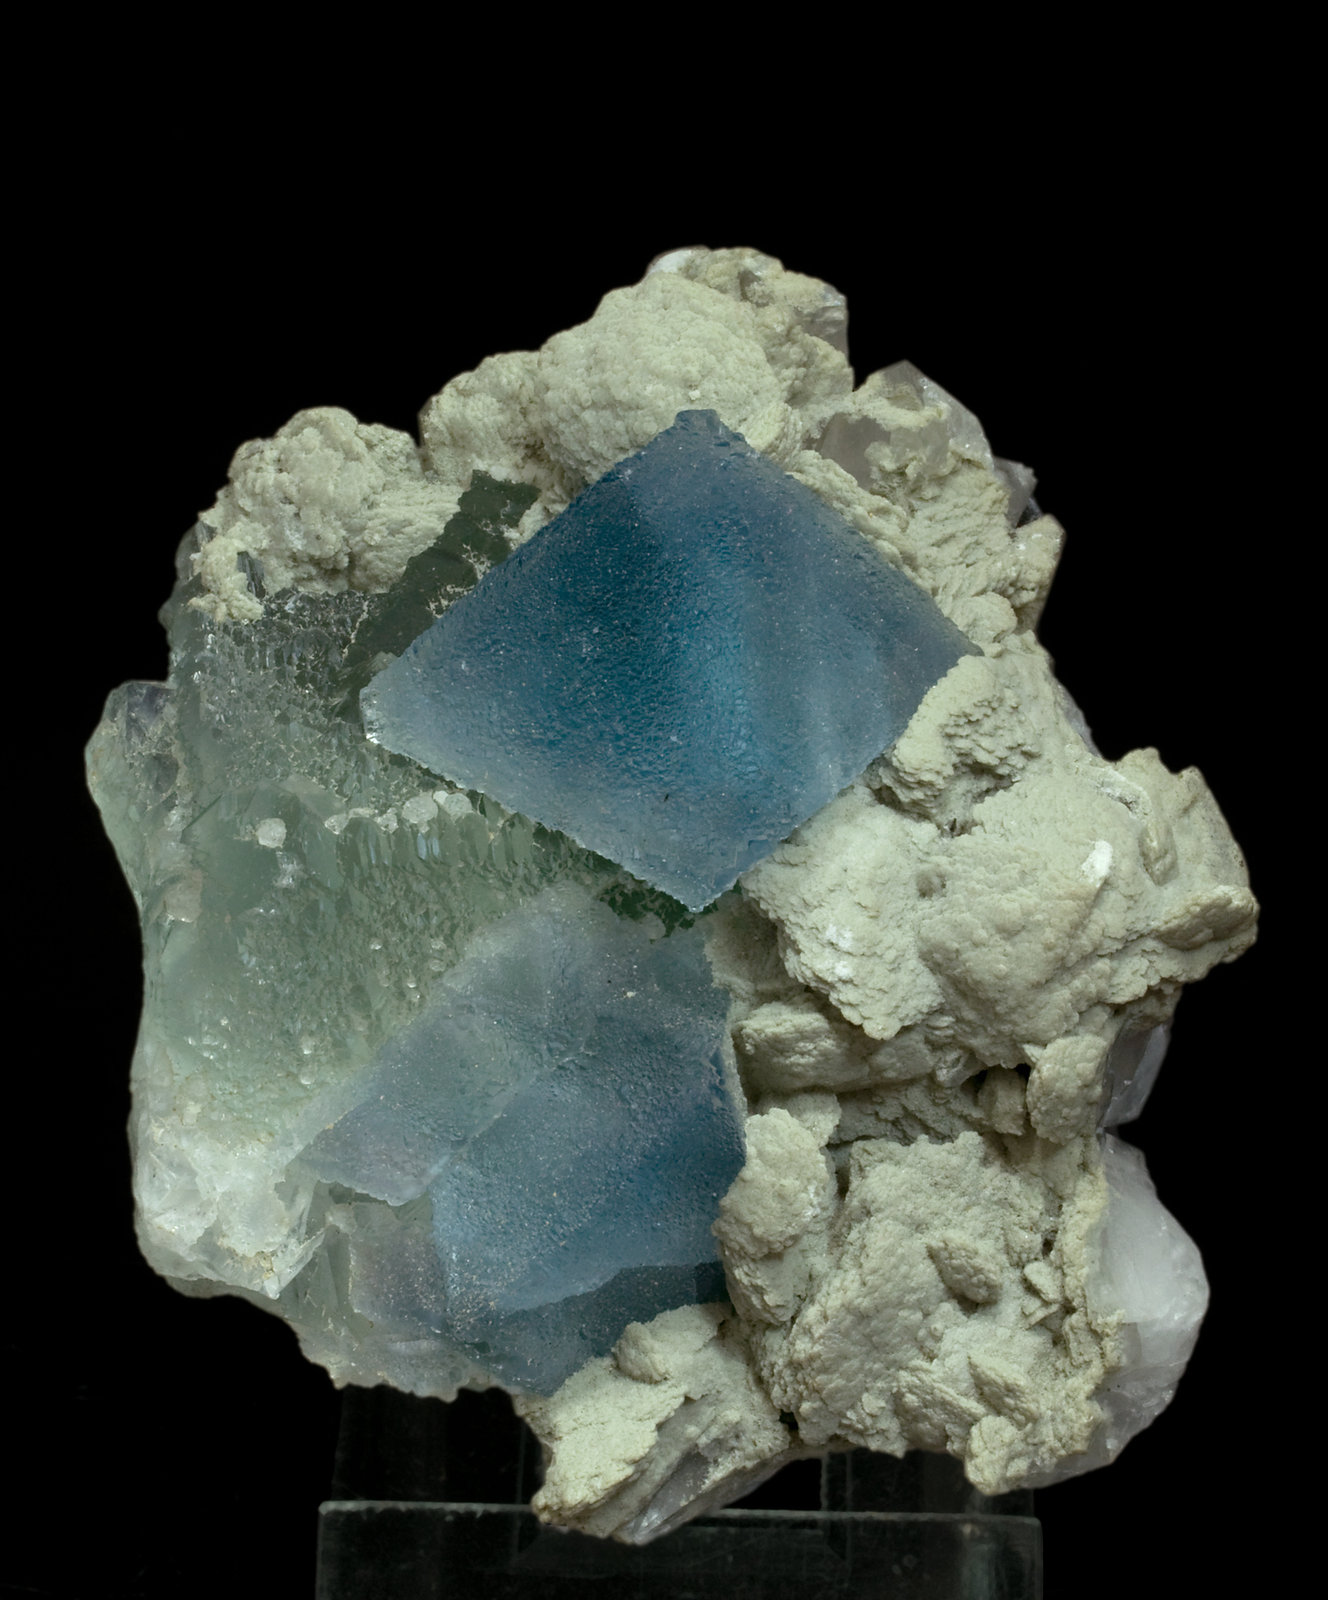 specimens/s_imagesW0/Fluorite-JJ89W0f.jpg